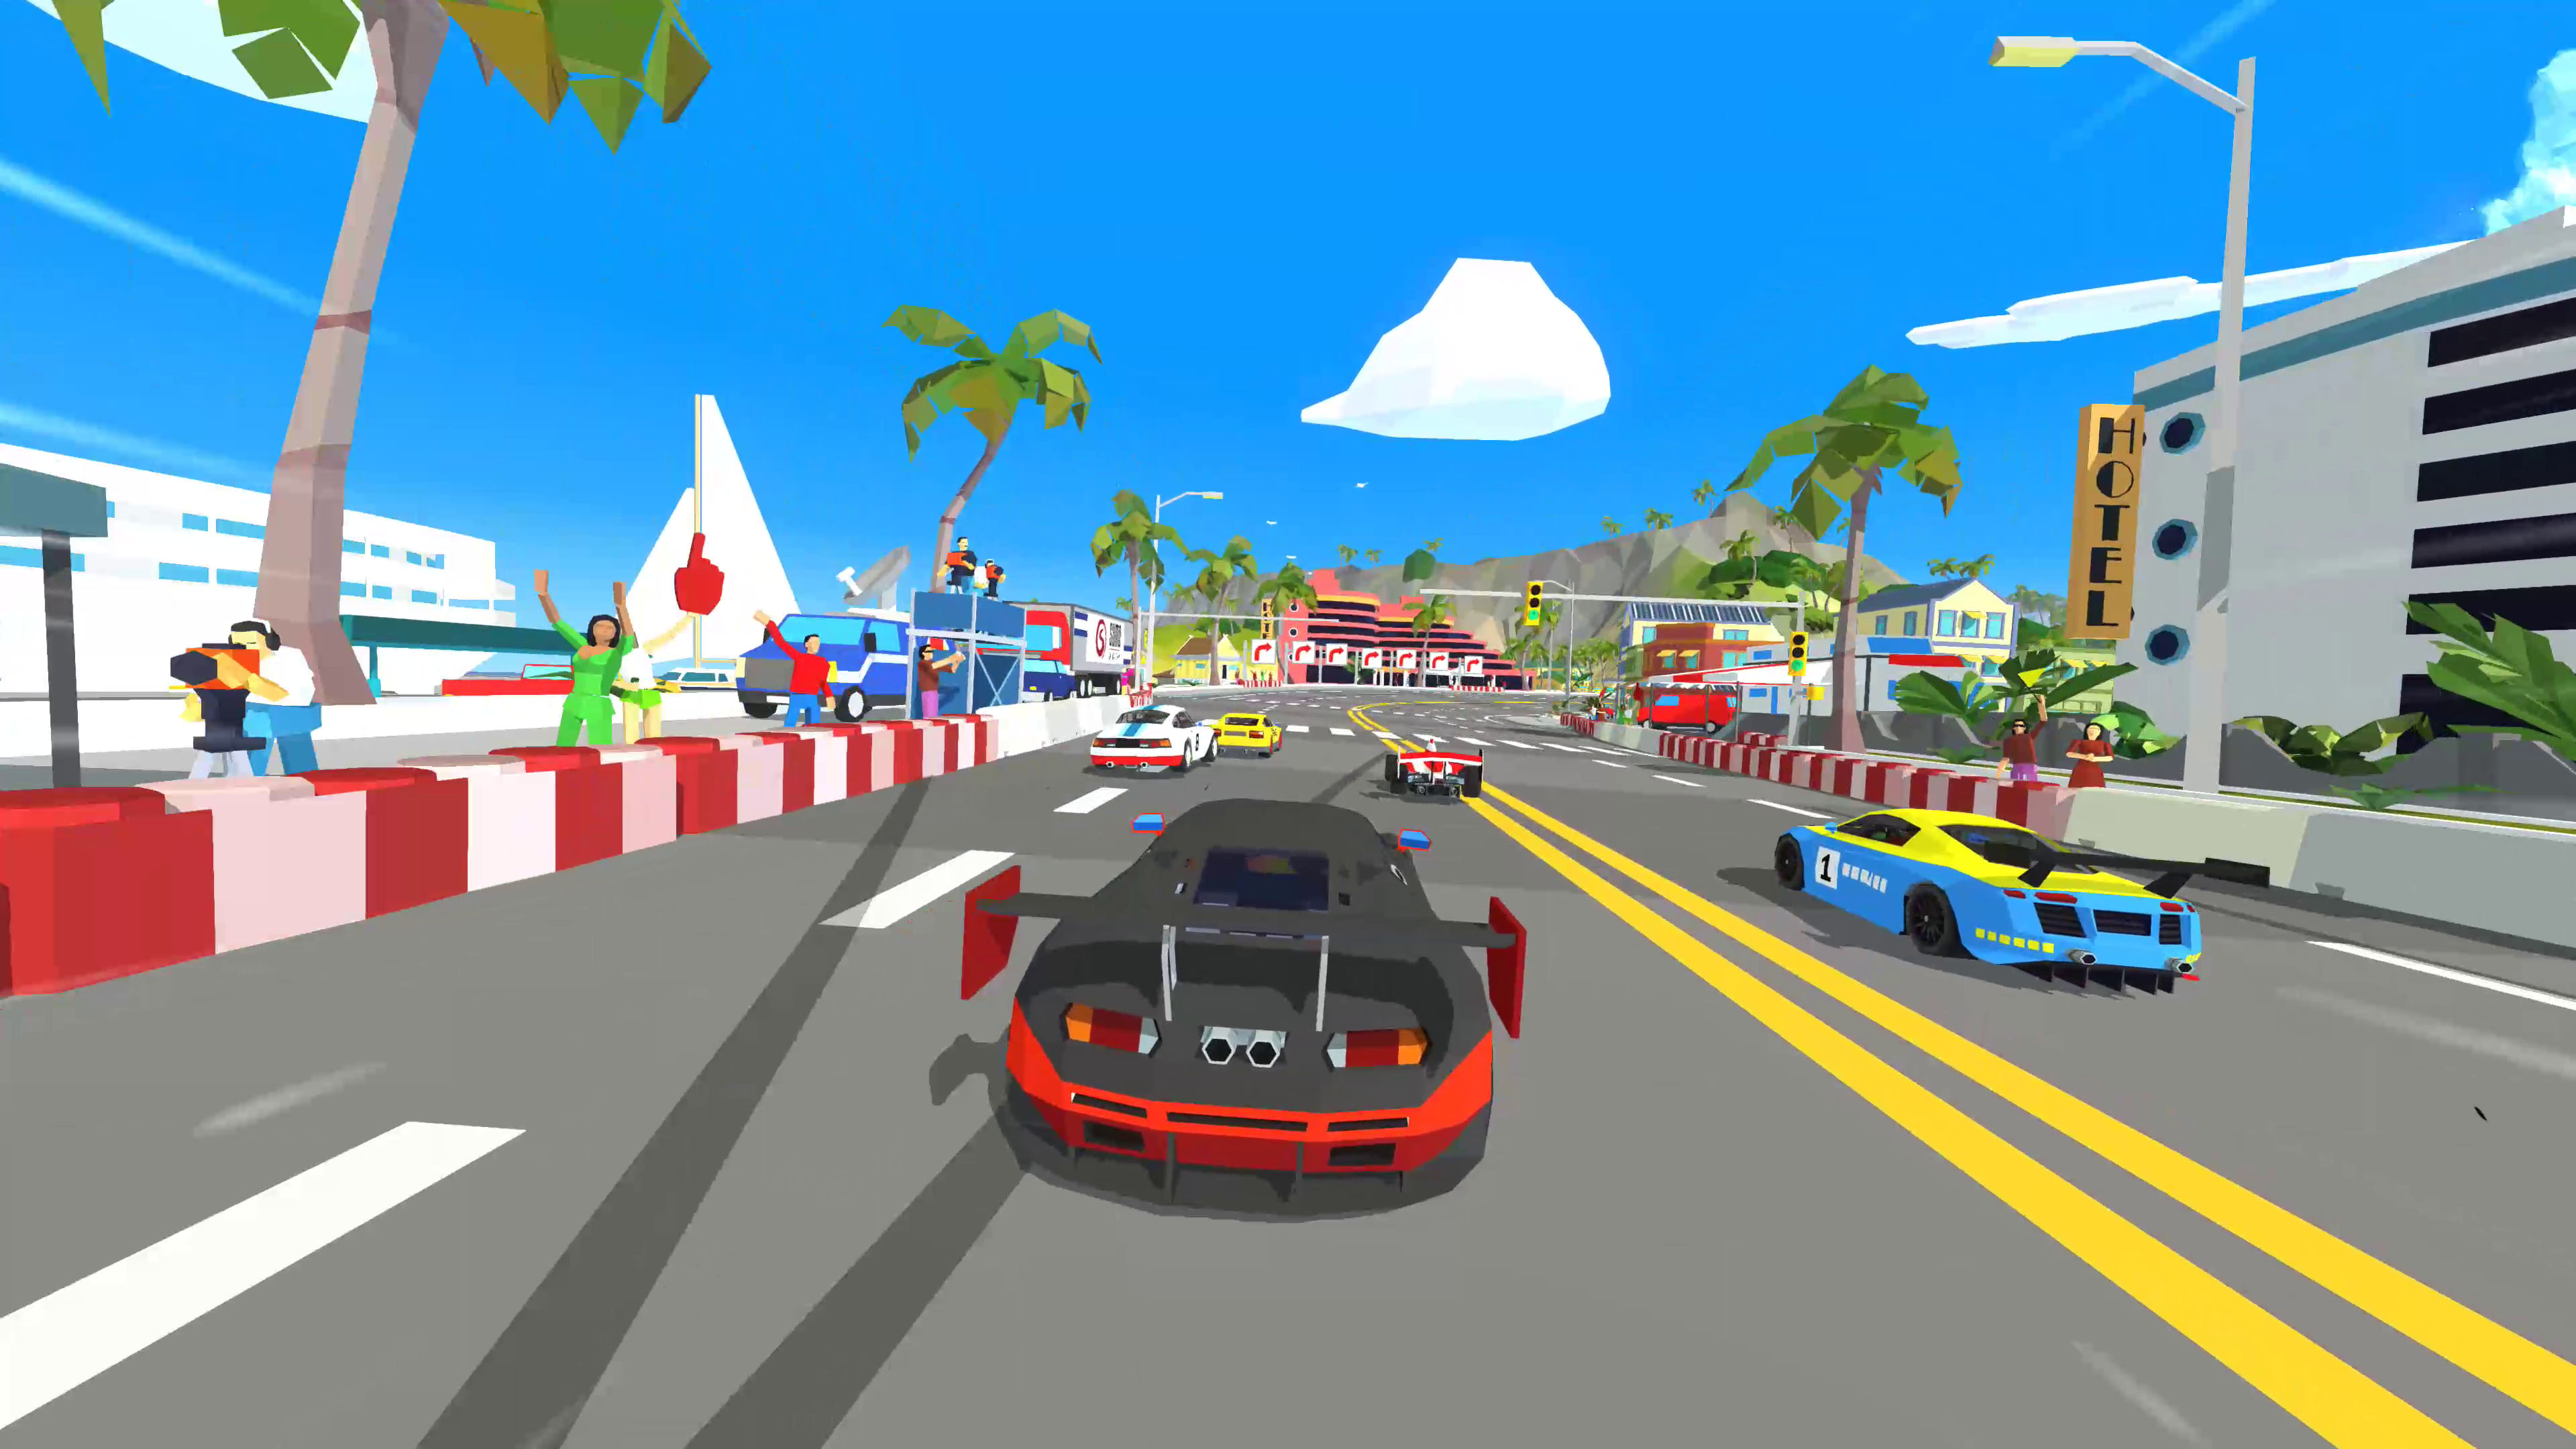 free download hotshot racing ps4